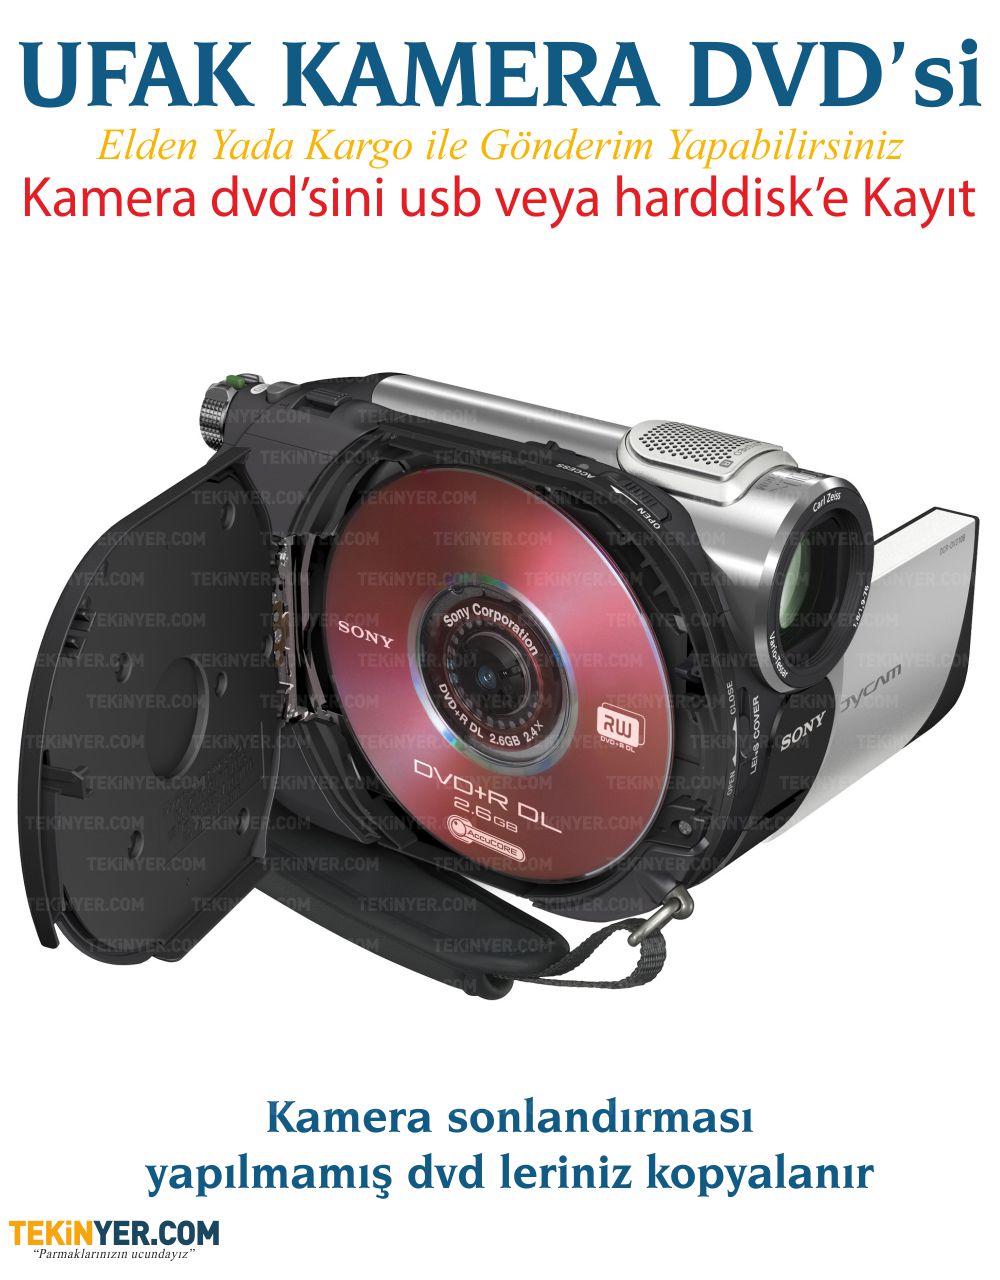 Kamera DVD si Kopyalama